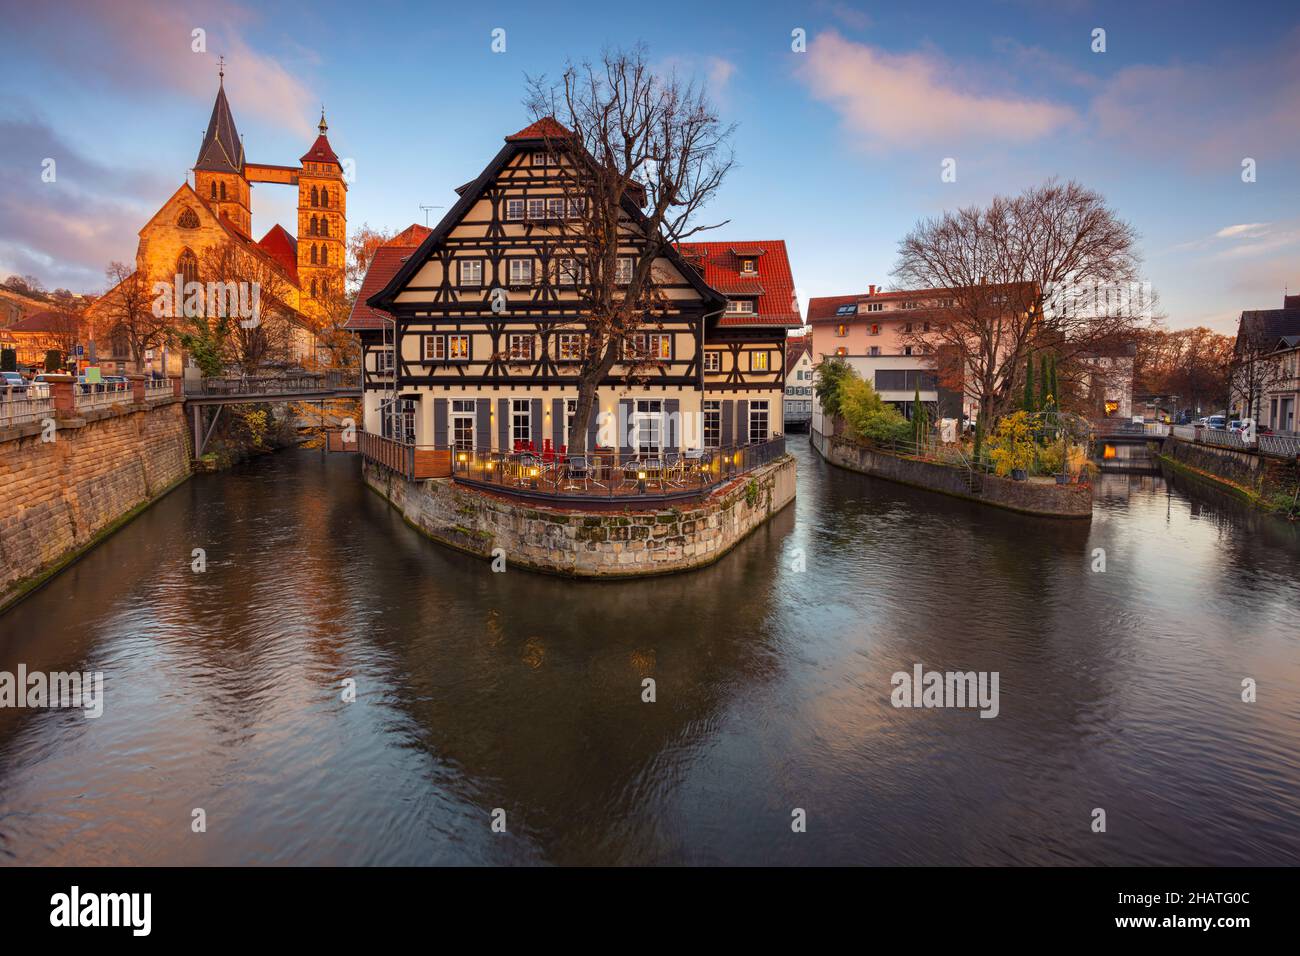 Esslingen am Neckar, Deutschland. Stadtbild der malerischen Altstadt von Esslingen am Neckar, Deutschland bei Sonnenuntergang in der Region Stuttgart gelegen Stockfoto